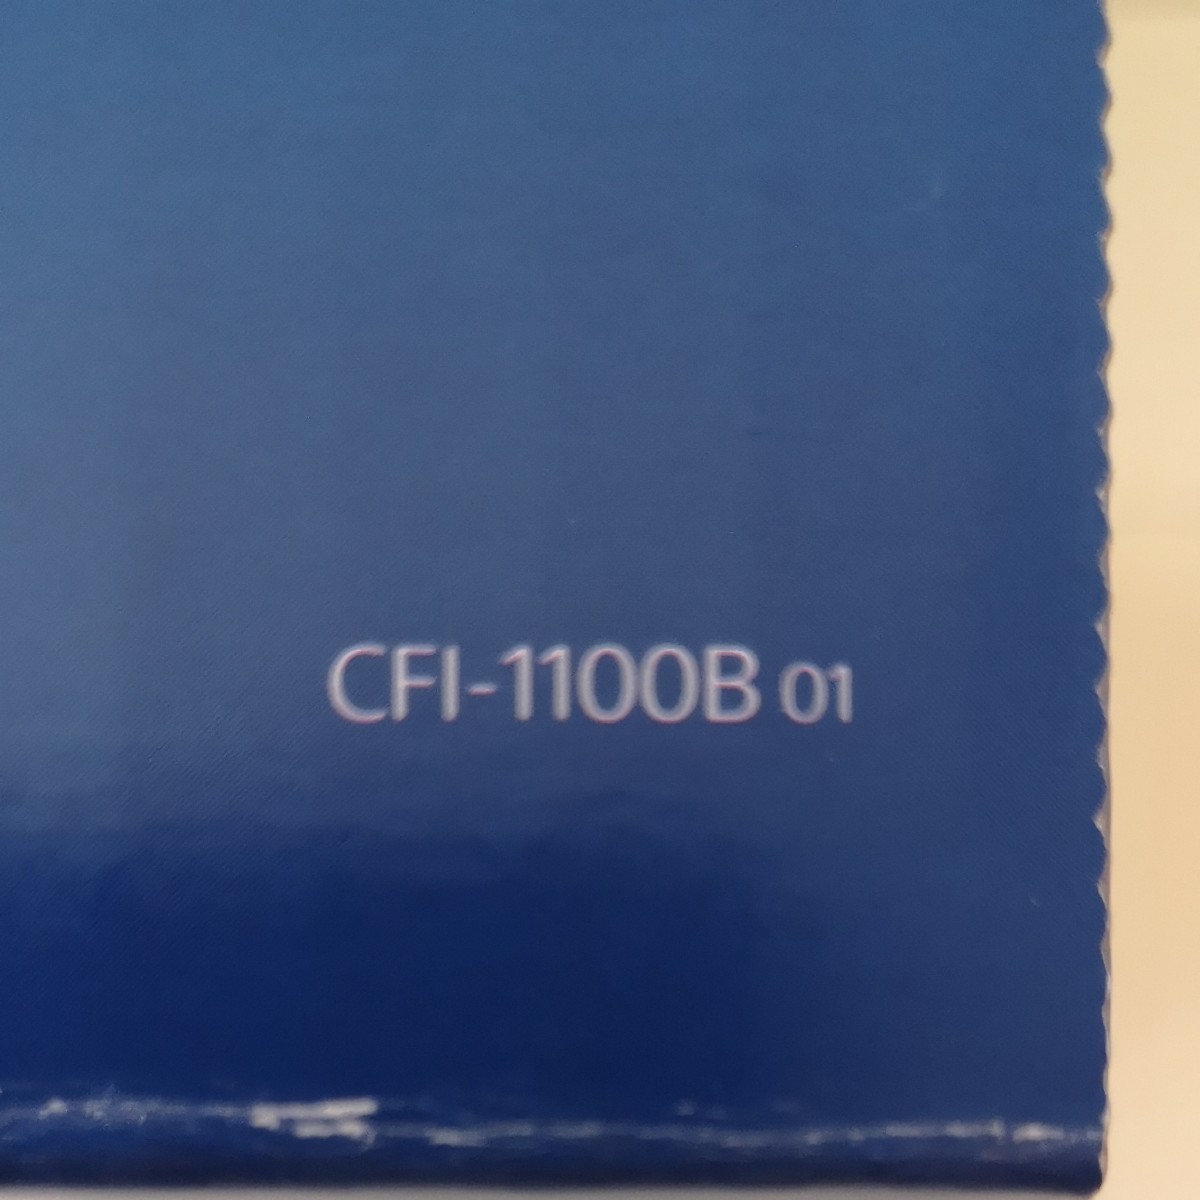 PlayStation5 デジタルエディション CFI-1100B01